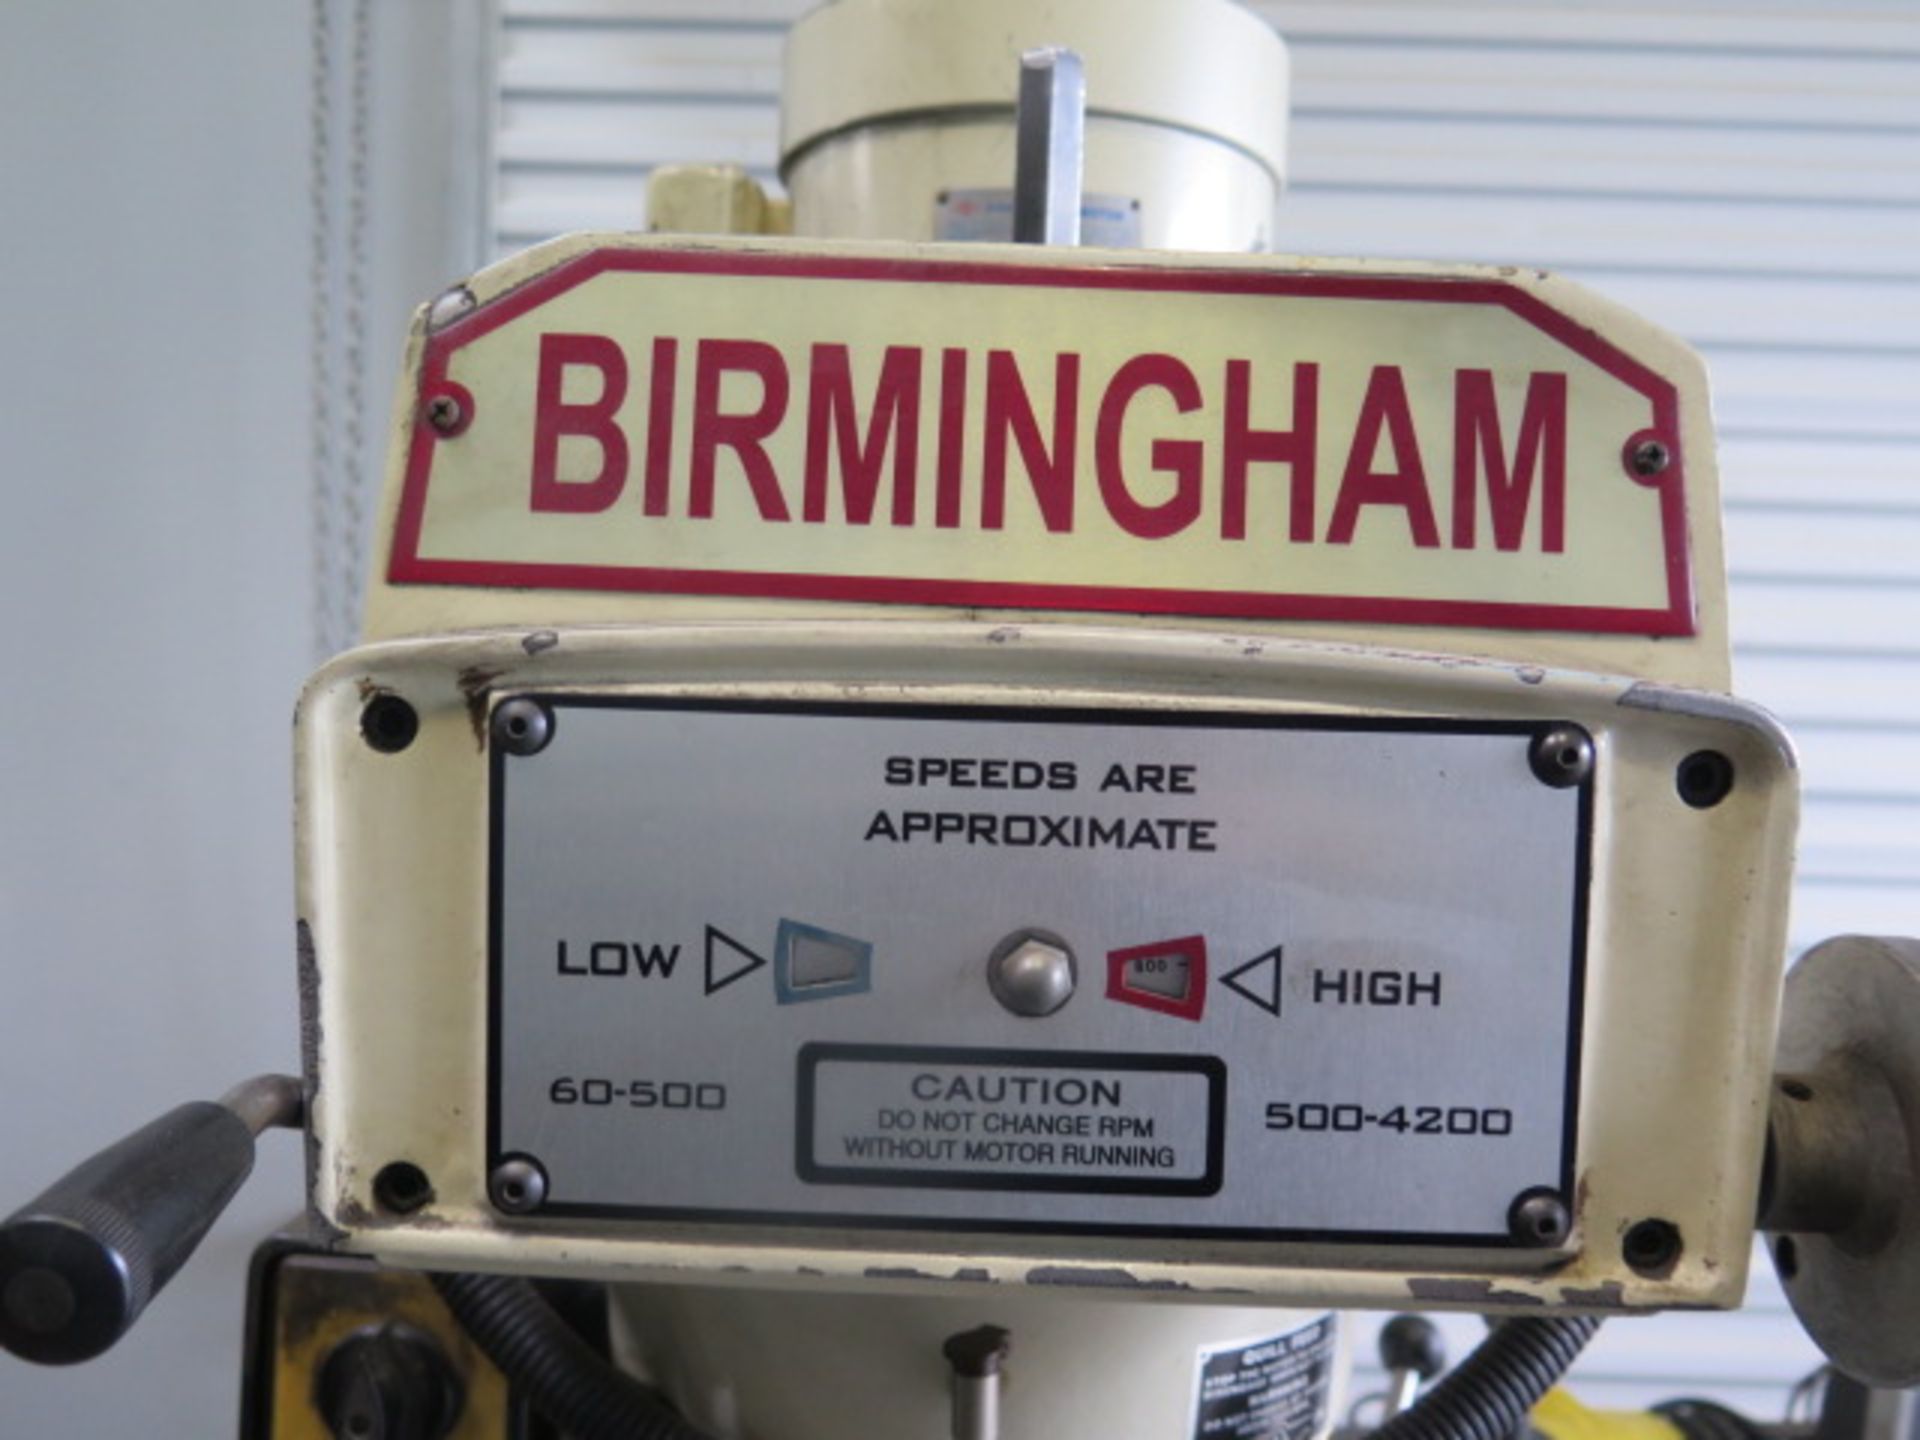 2007 Birmingham BPV-3949C Vertical Mill s/n 073994 w/ Newall C80 Prog DRO, 3Hp Motor,SOLD AS IS - Image 10 of 11